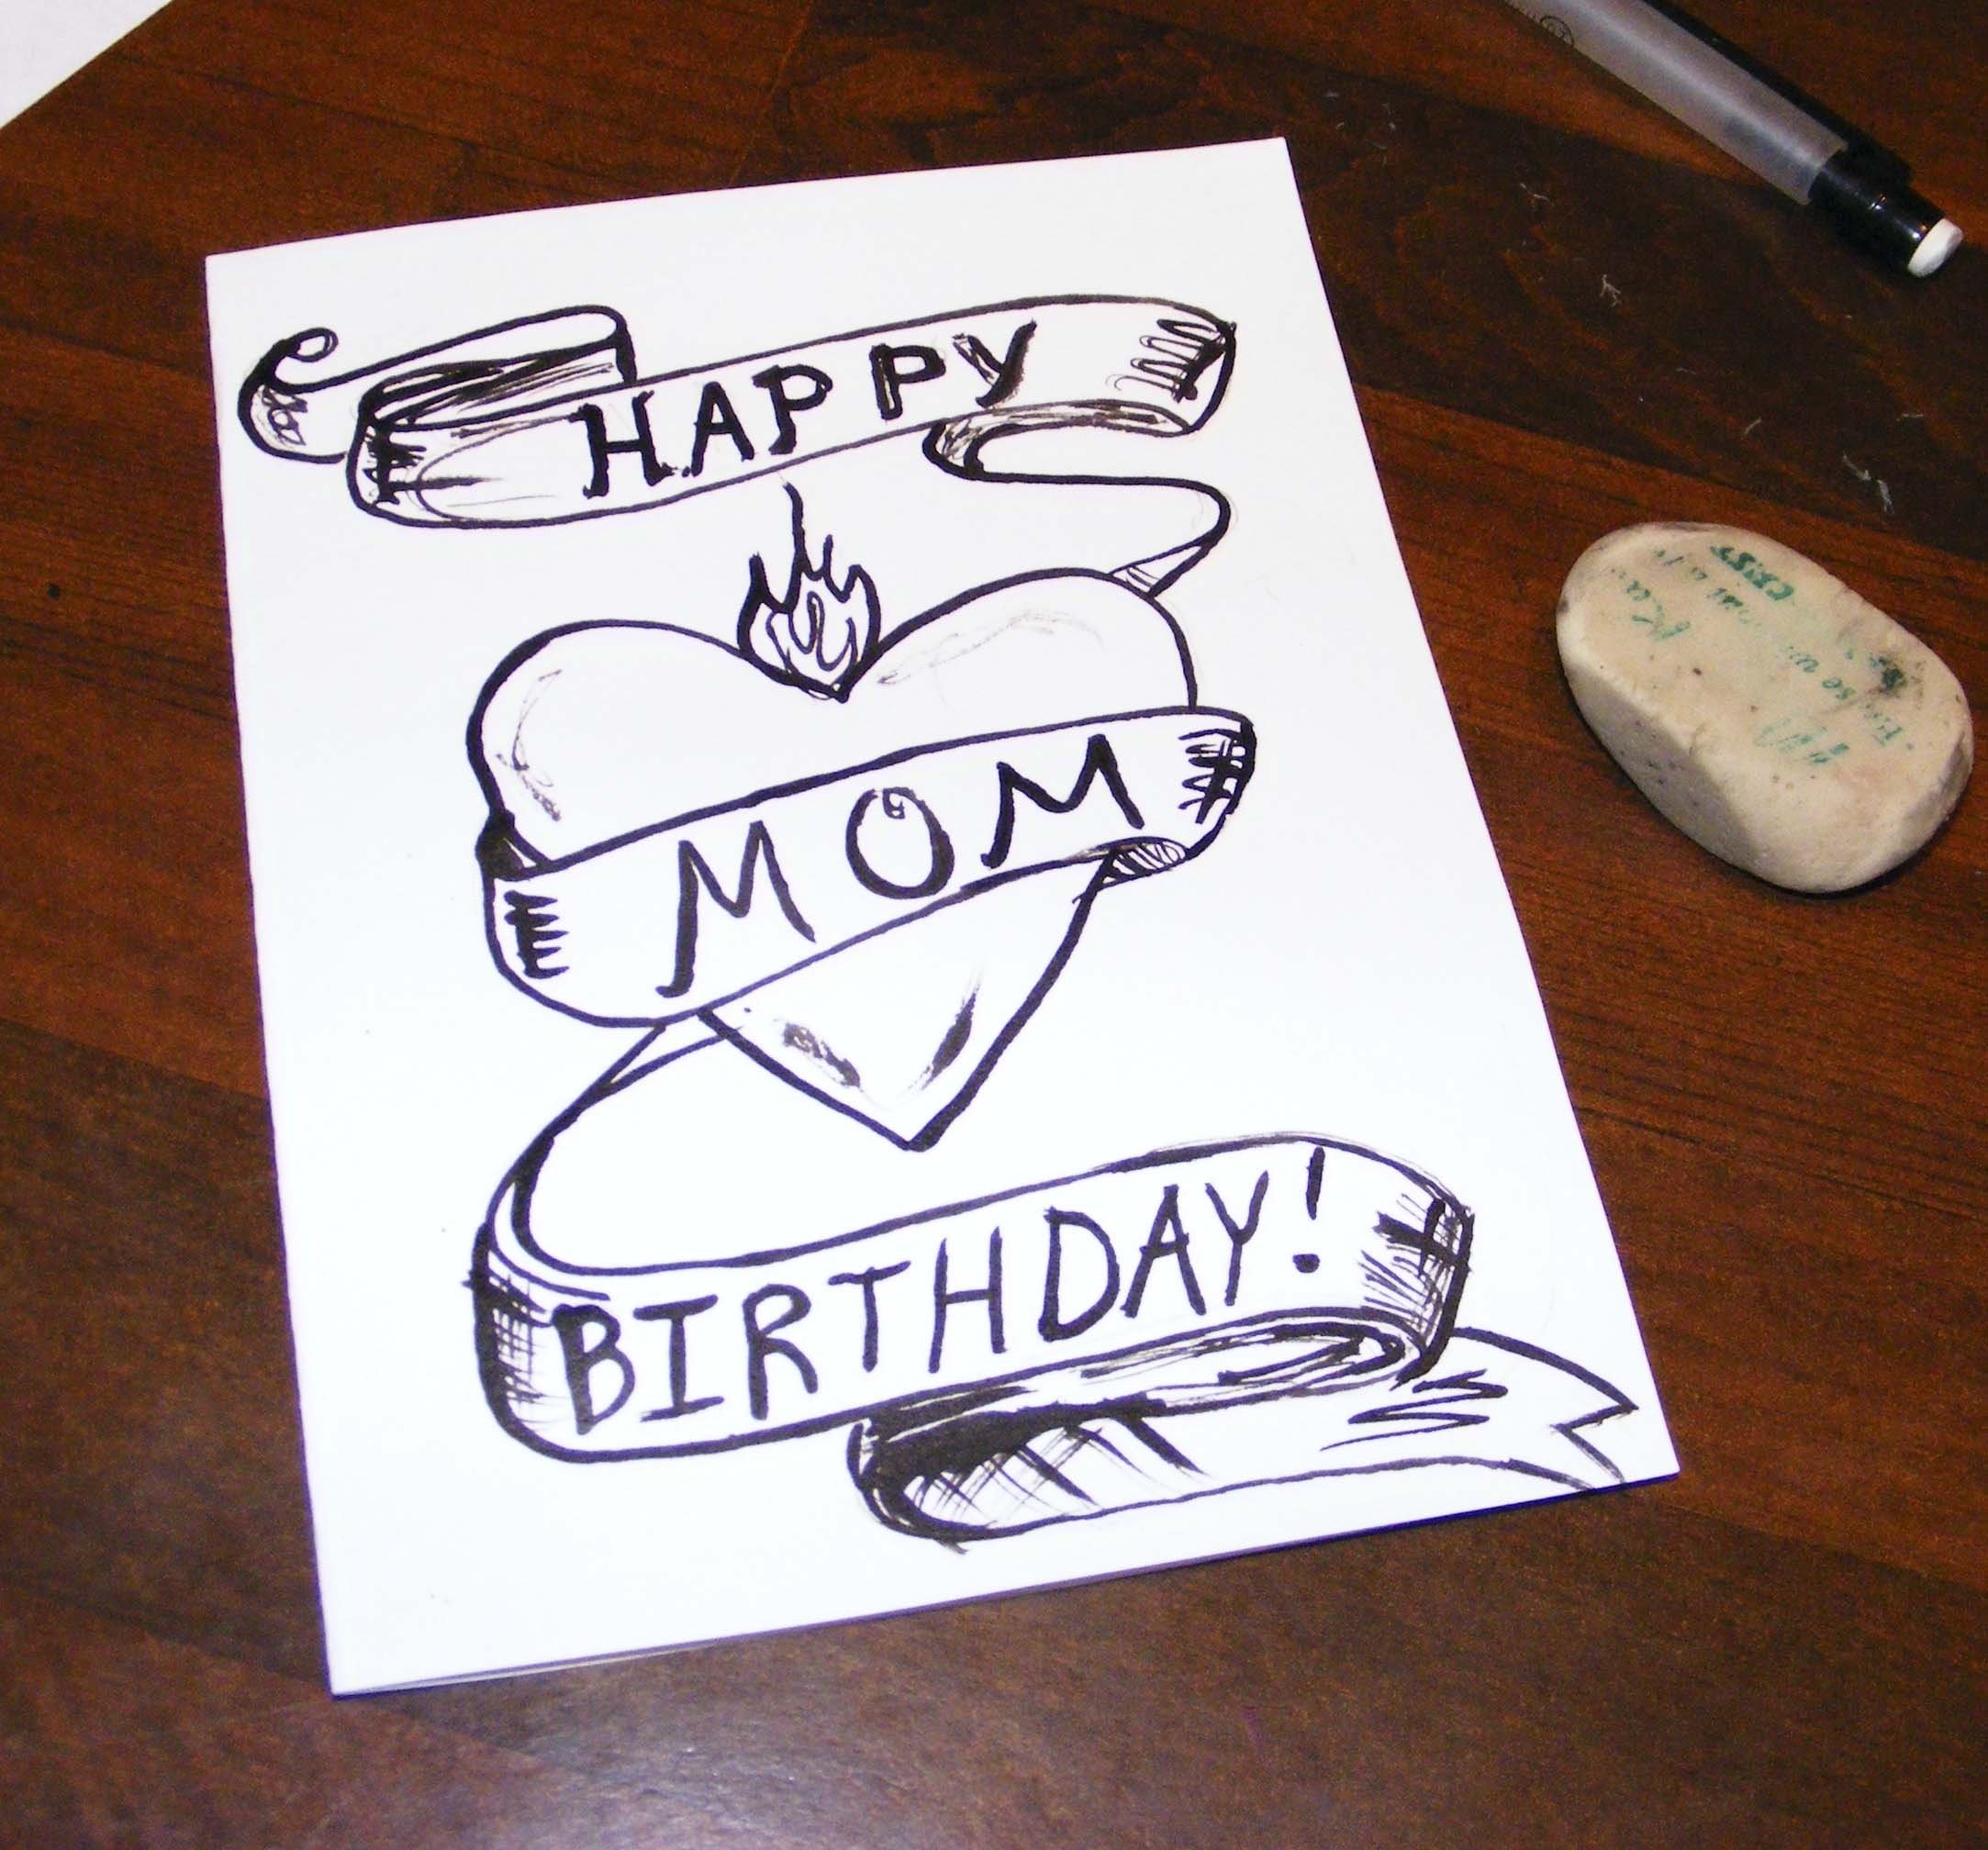 10 Most Popular Birthday Card For Mom Ideas happy birthday cards for mom intended for ucwords card design ideas 2 2022